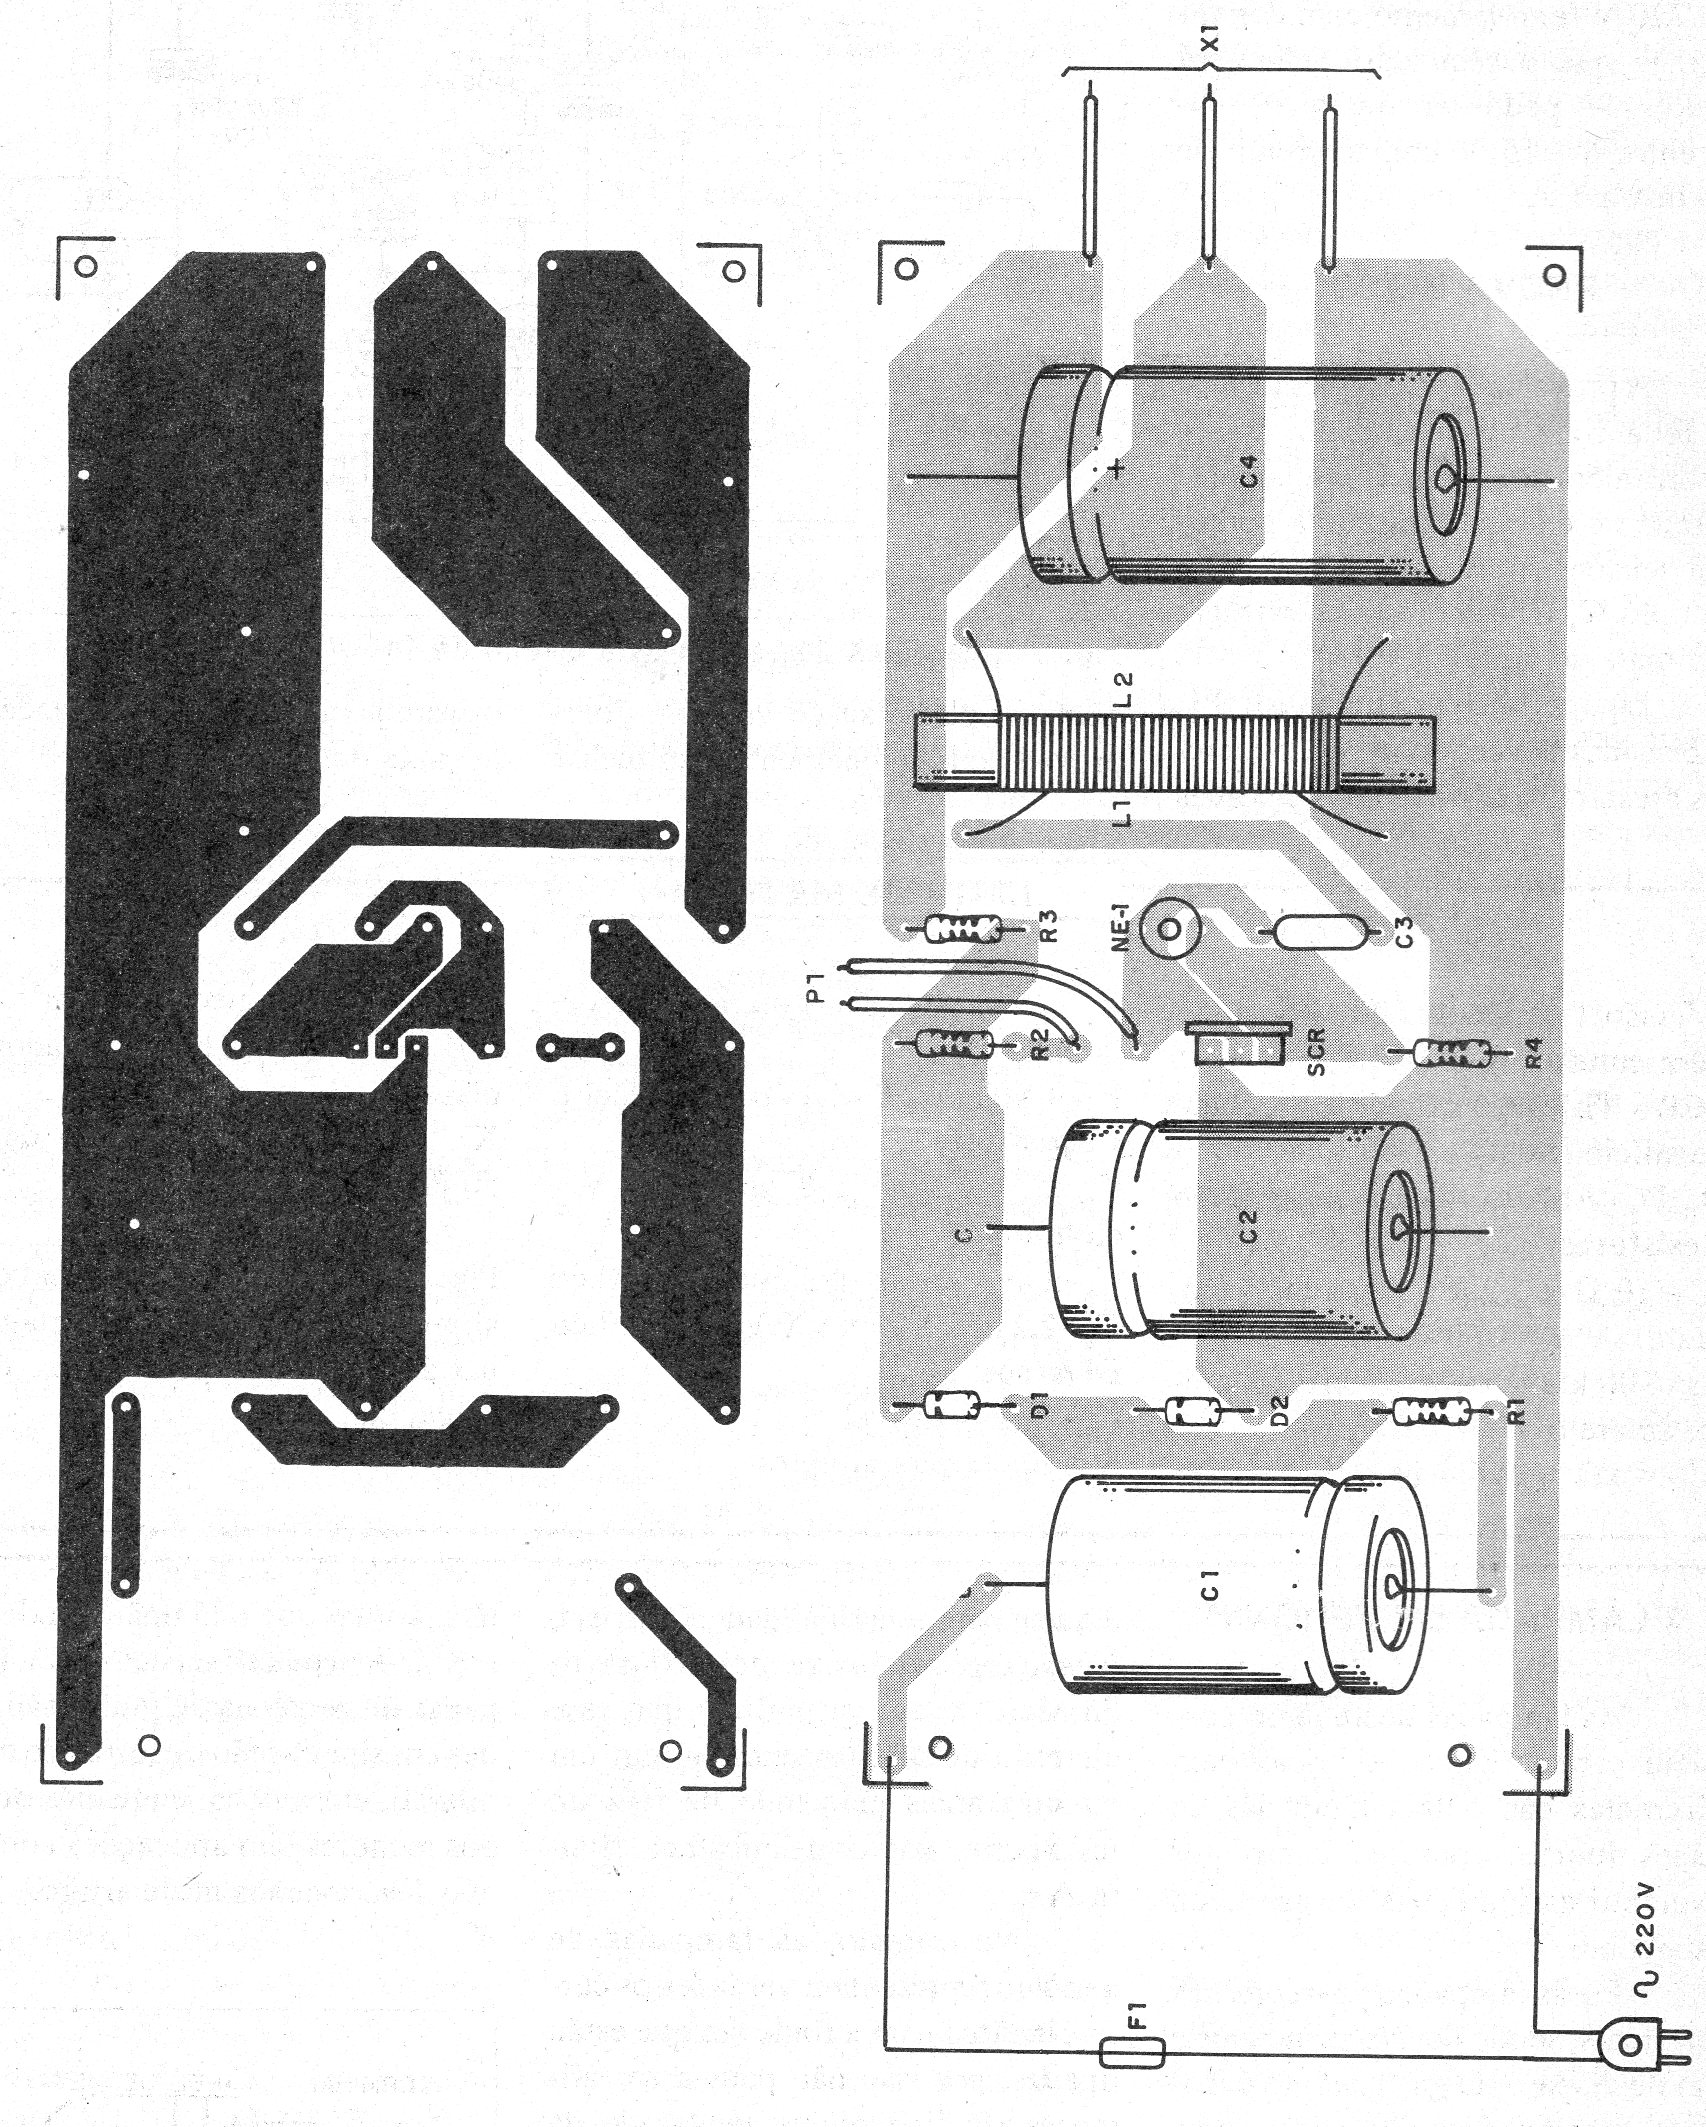   Figura 3 – Placa de circuito impresso para a versão de 220 V
